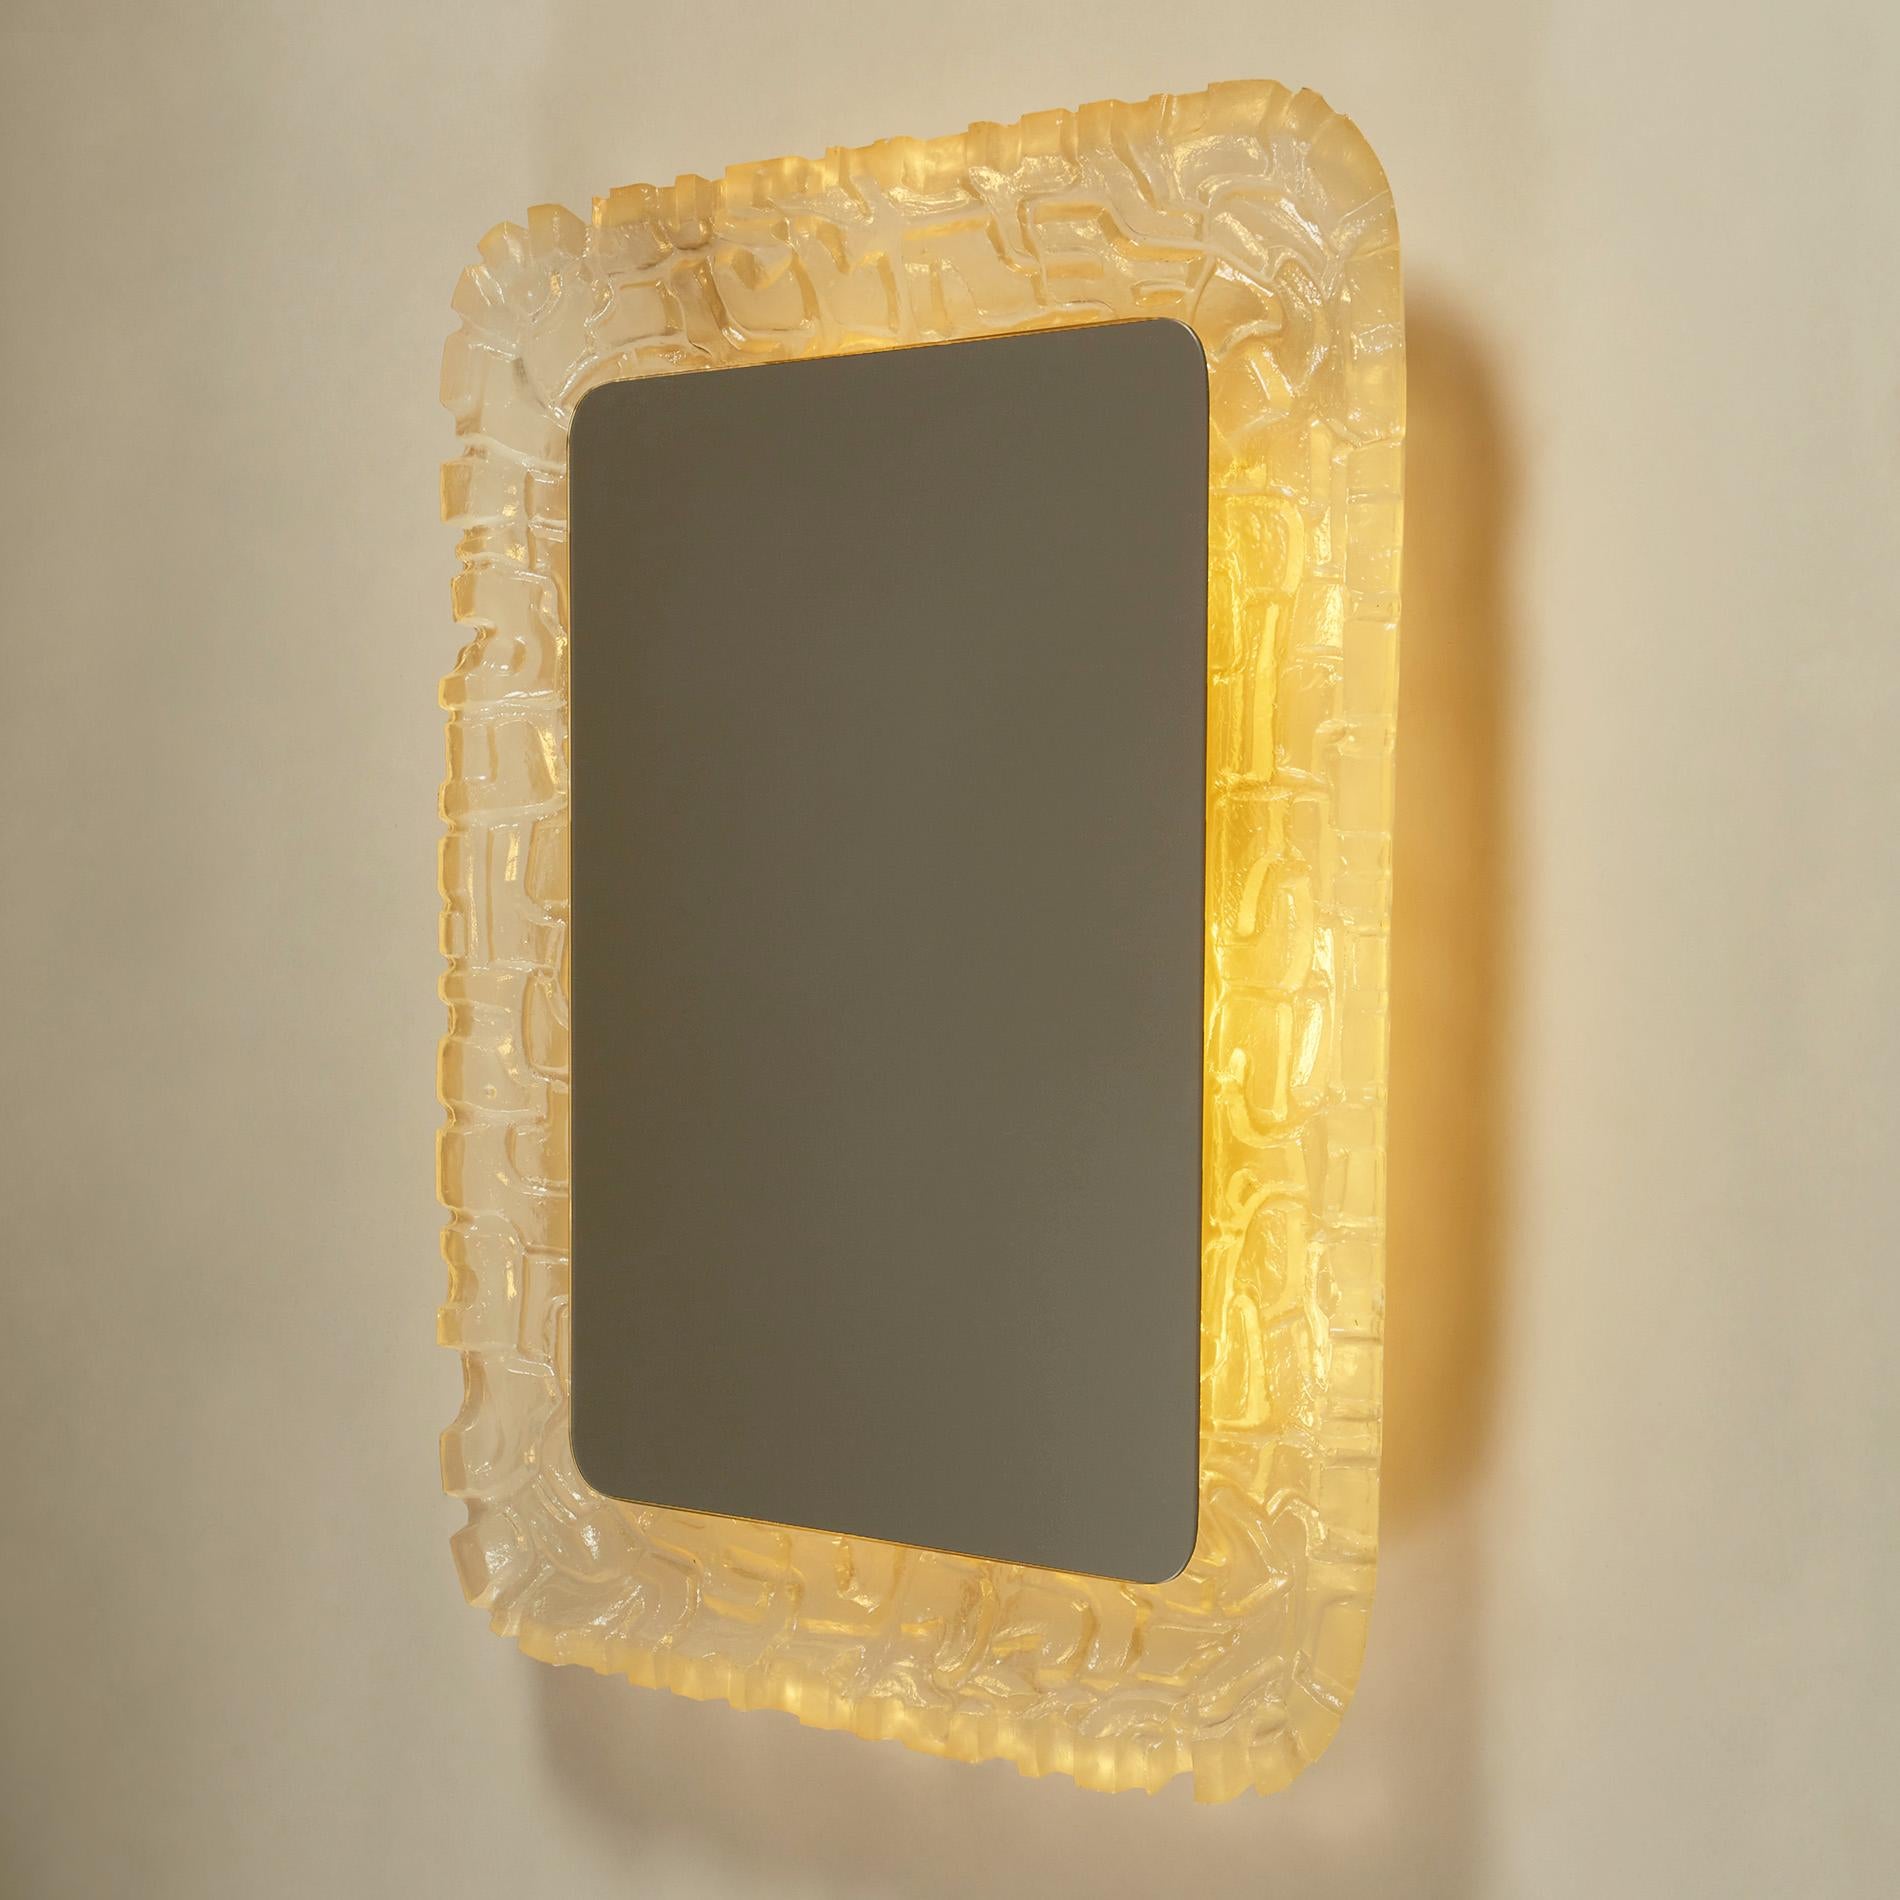 Miroir rectangulaire inhabituel avec éclairage arrière. Le cadre concave est sculpté dans des cubes irréguliers de résine froide et brillante.